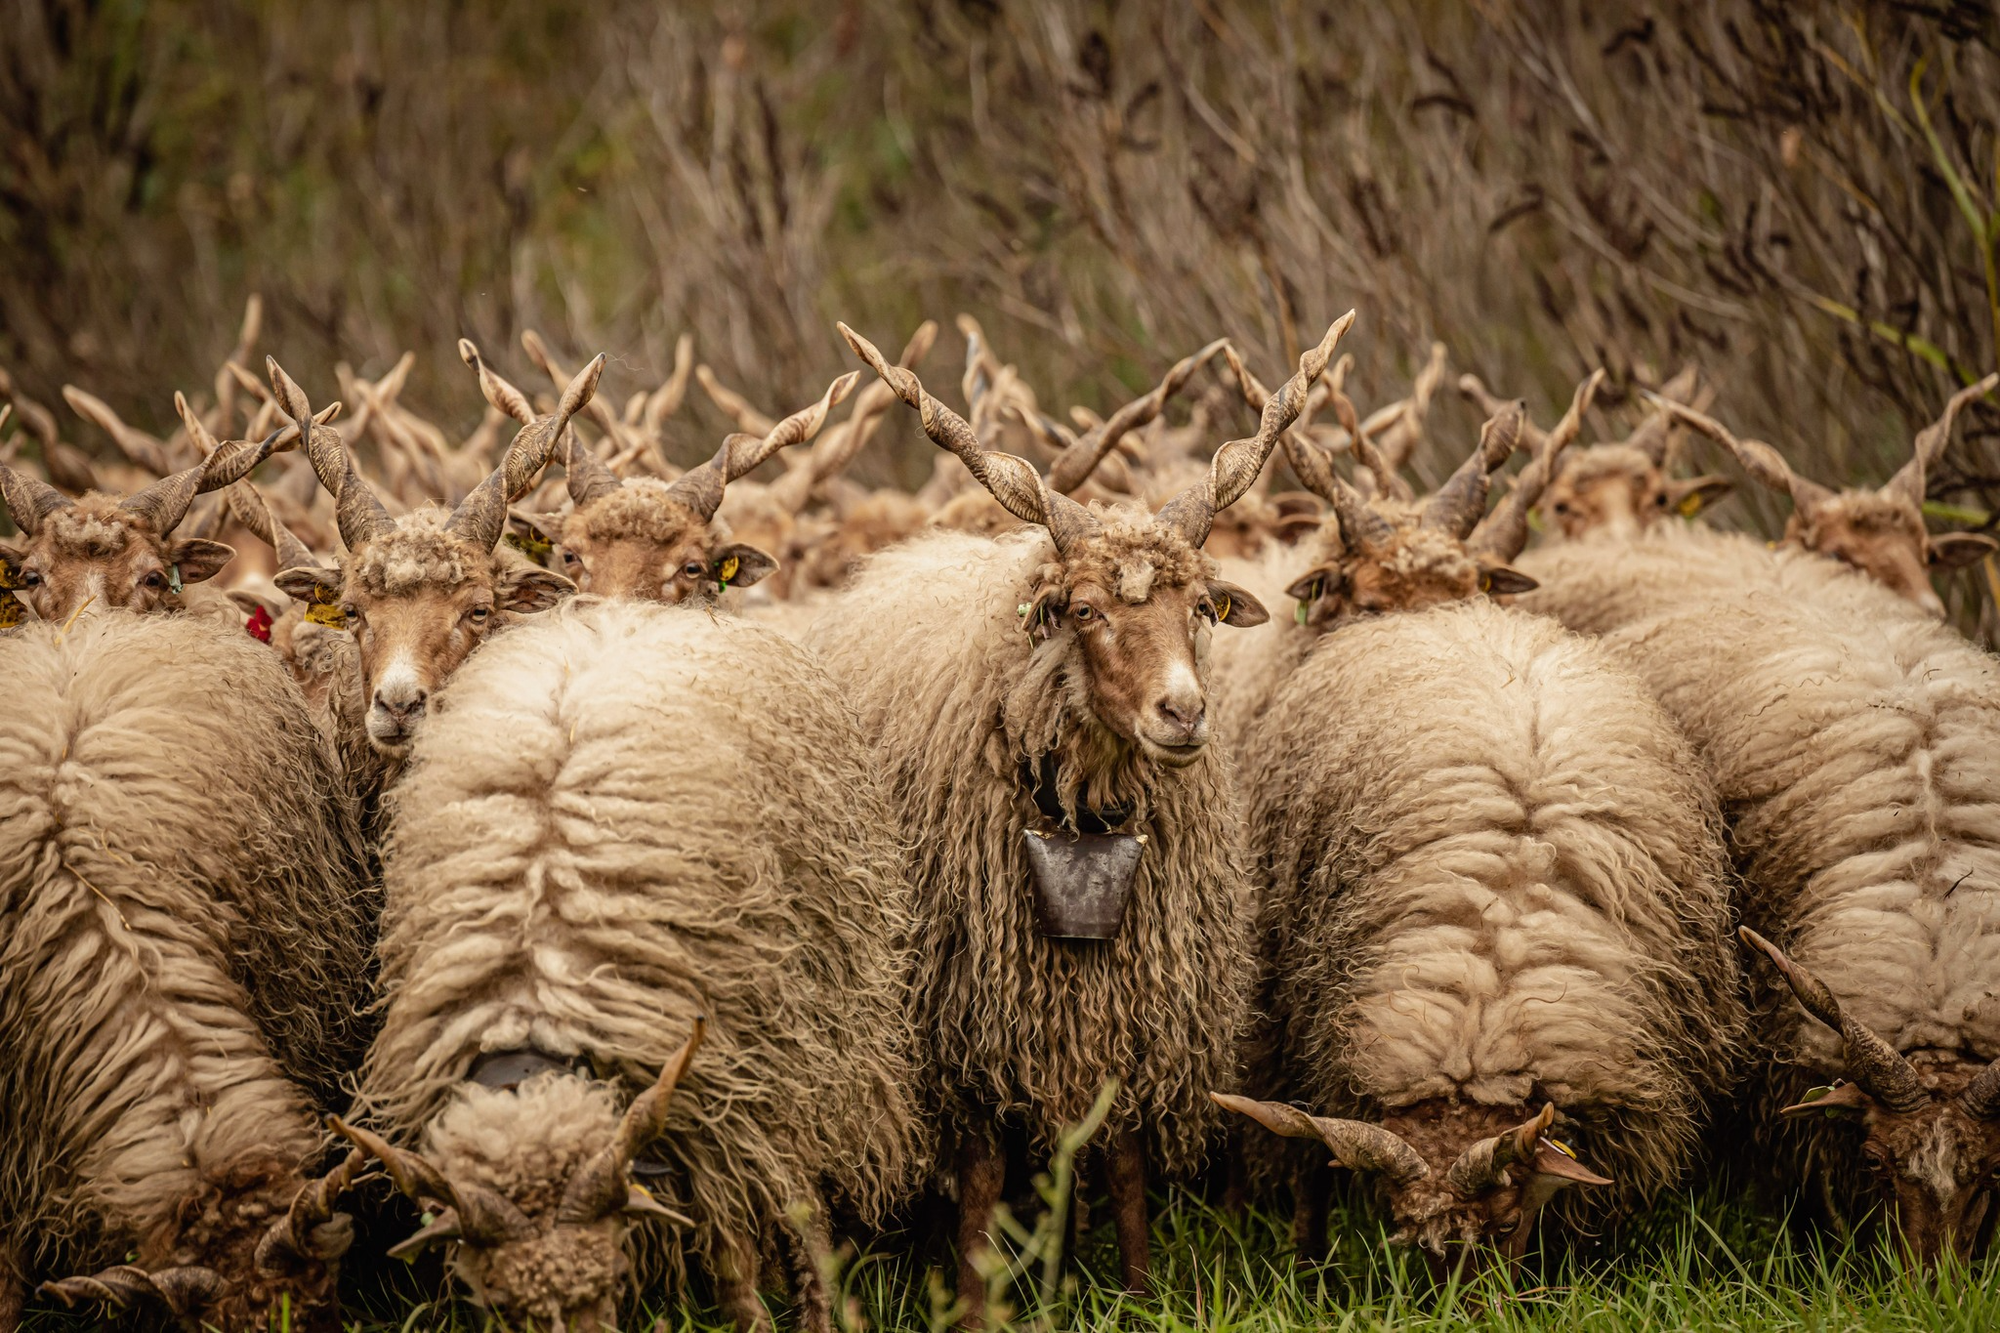 Cừu Racka: Giống cừu có bộ lông siêu dày và cặp sừng xoắn ốc kỳ lạ! - Ảnh 5.